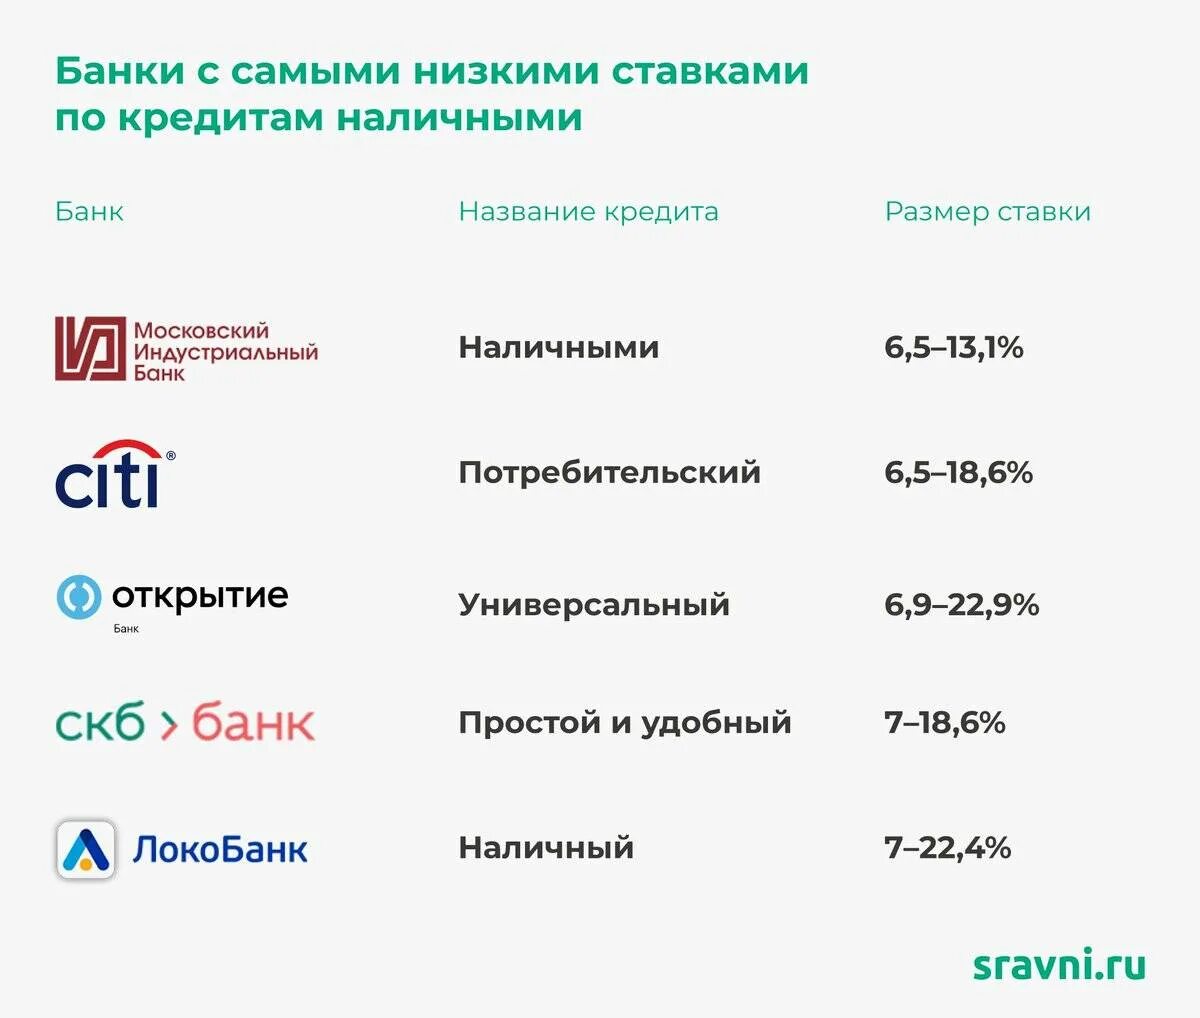 Банк россии может выдать кредит. Потребительский кредит ставки банков. Проценты по потребительскому кредиту. Процентные ставки по потребительским кредитам. Самый низкий процент по кредиту наличными.